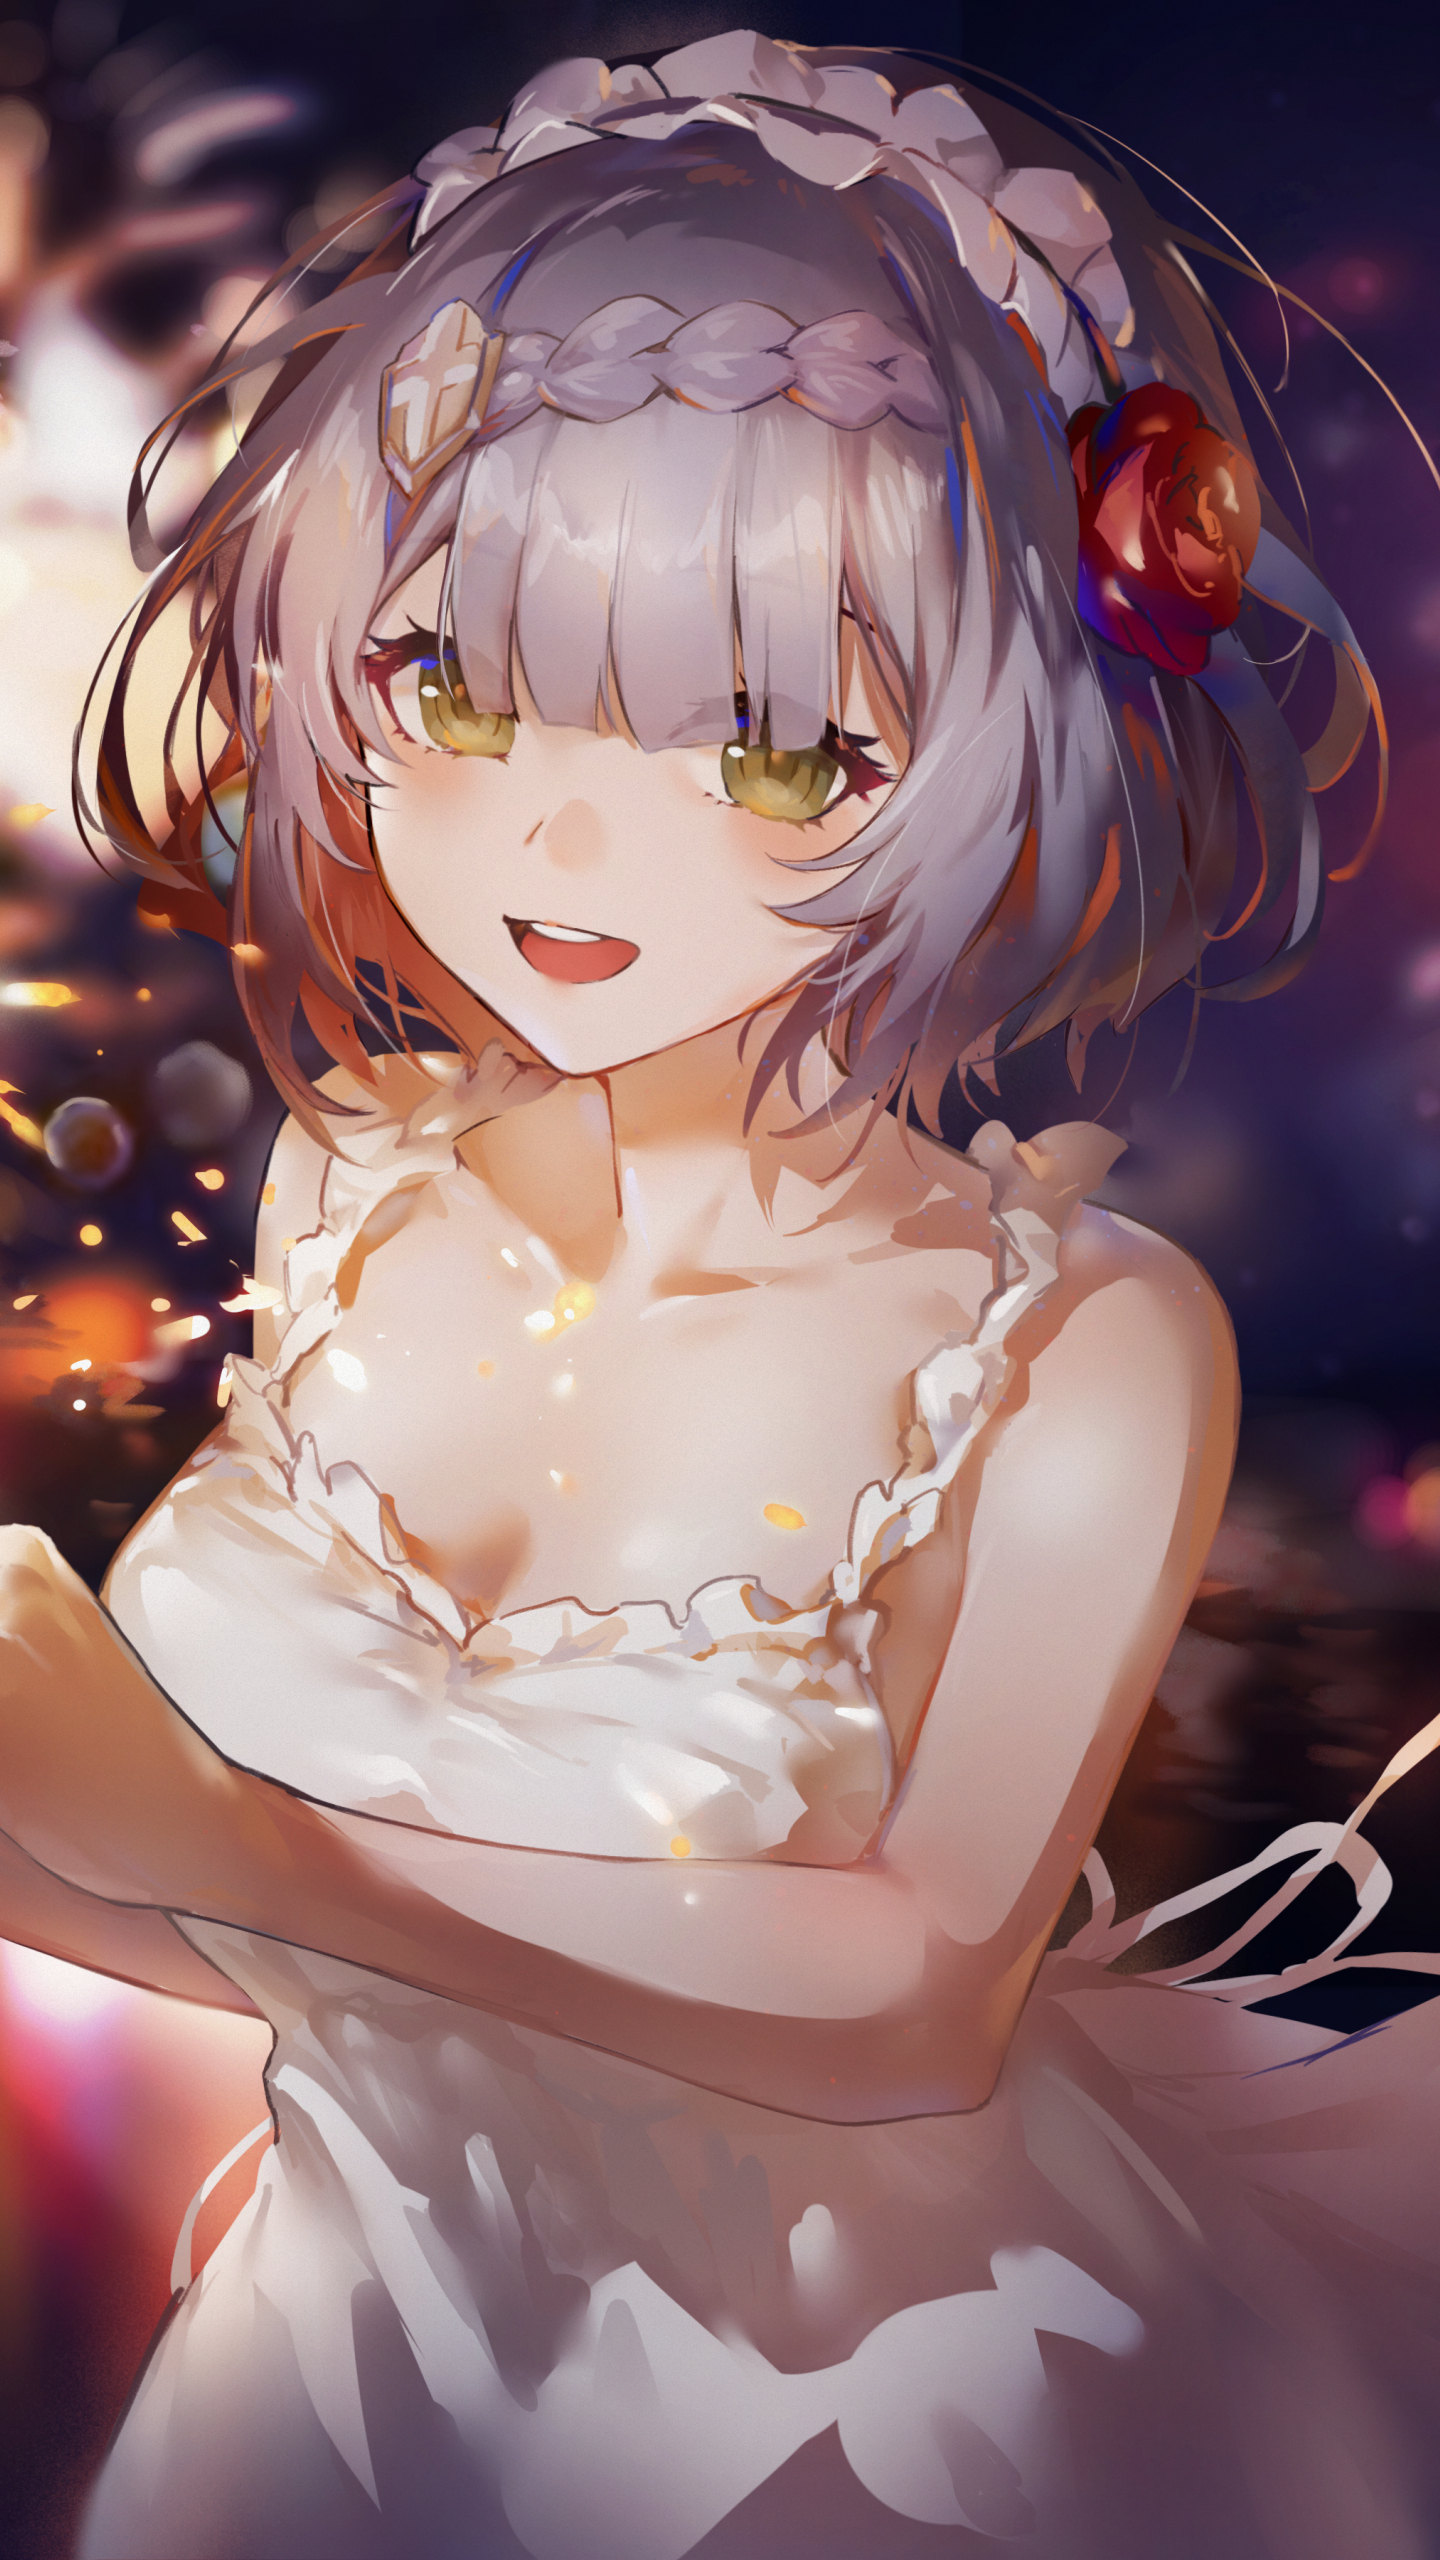 White dress, cute anime girl, art, 1440x2560 wallpaper